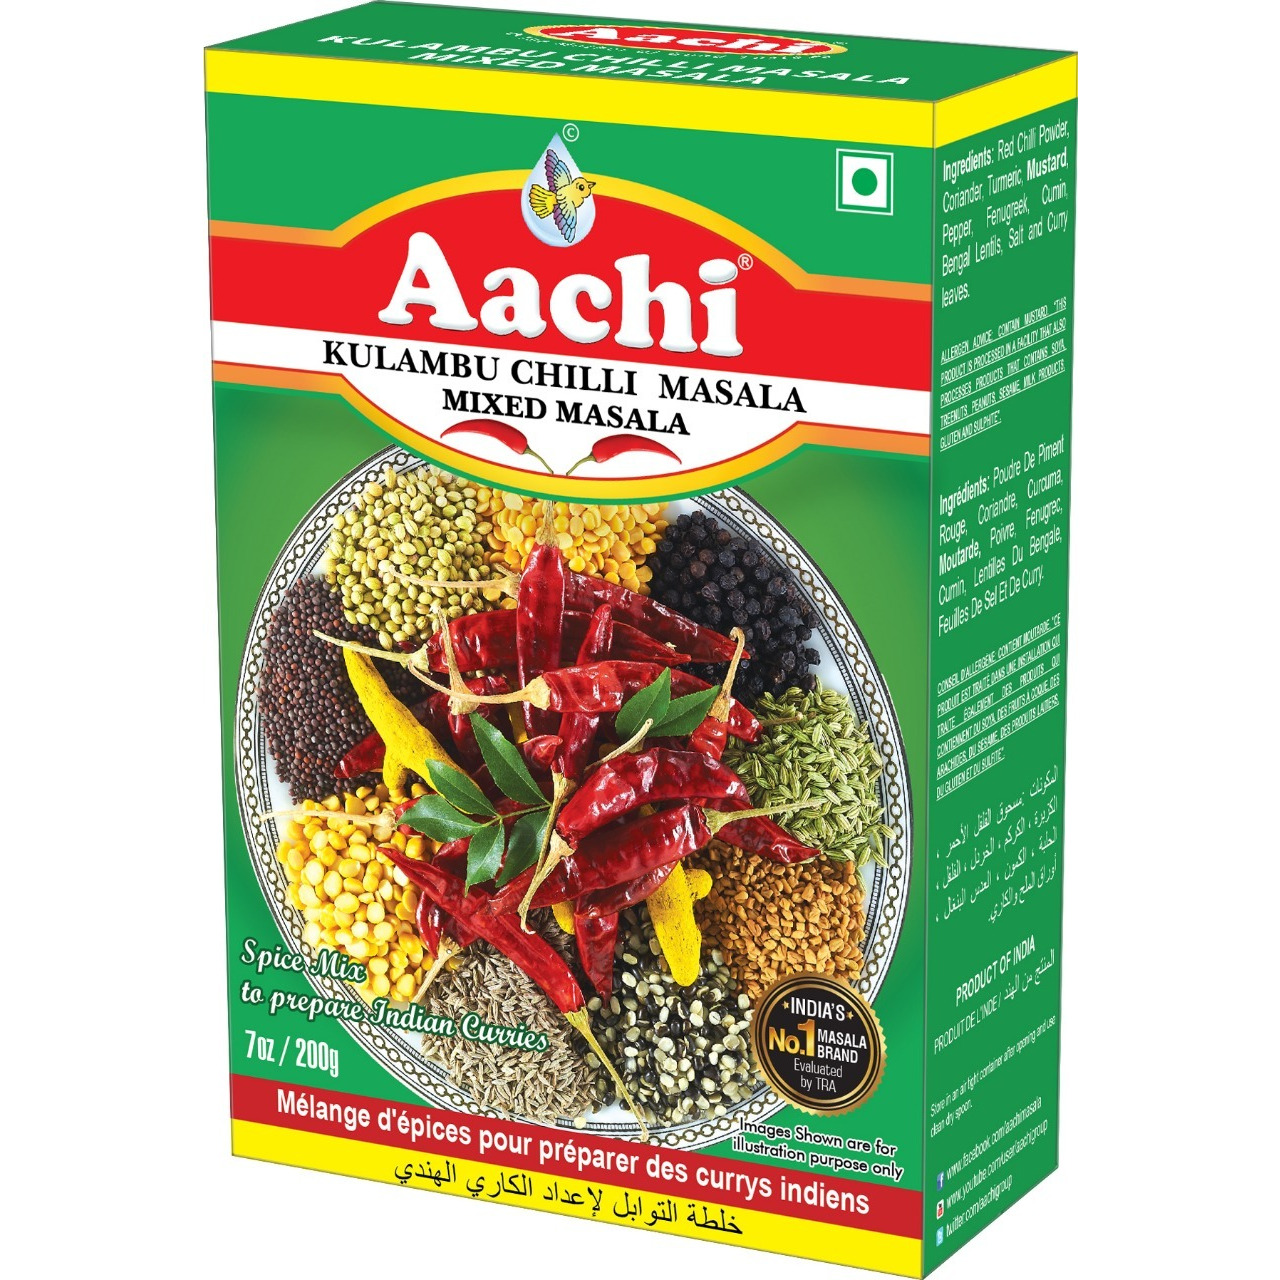 Aachi Kulambu Chilli Masala Mixed Masala - 160 Gm (5.6 Oz)